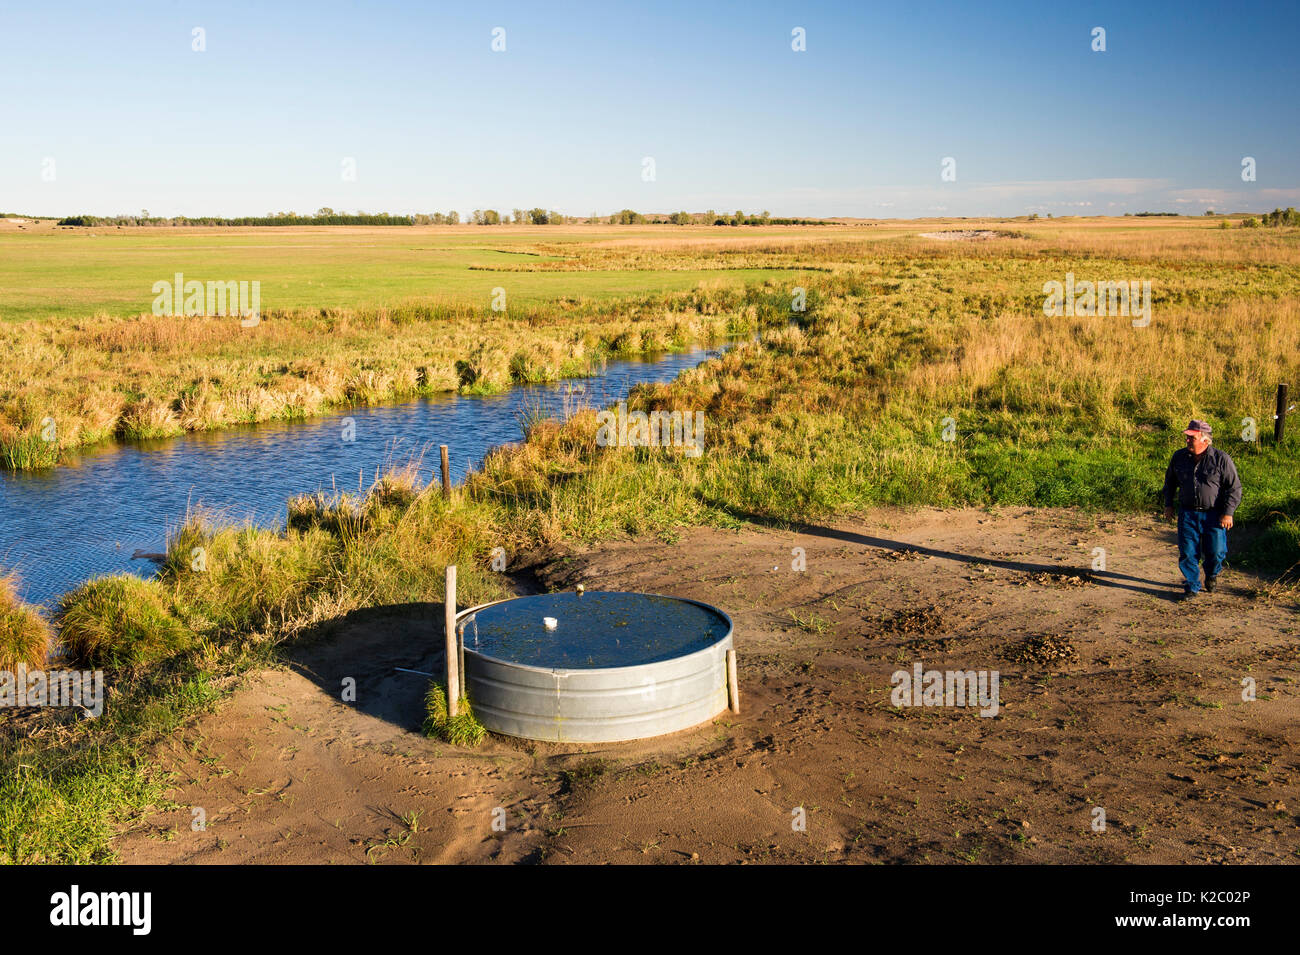 Lynn Ballagh ispezionando il pozzo di acqua sul suo ranch di bestiame in Sandhills del Nebraska, Garfield County, Nebraska, Stati Uniti d'America. Ottobre 2014. Foto Stock